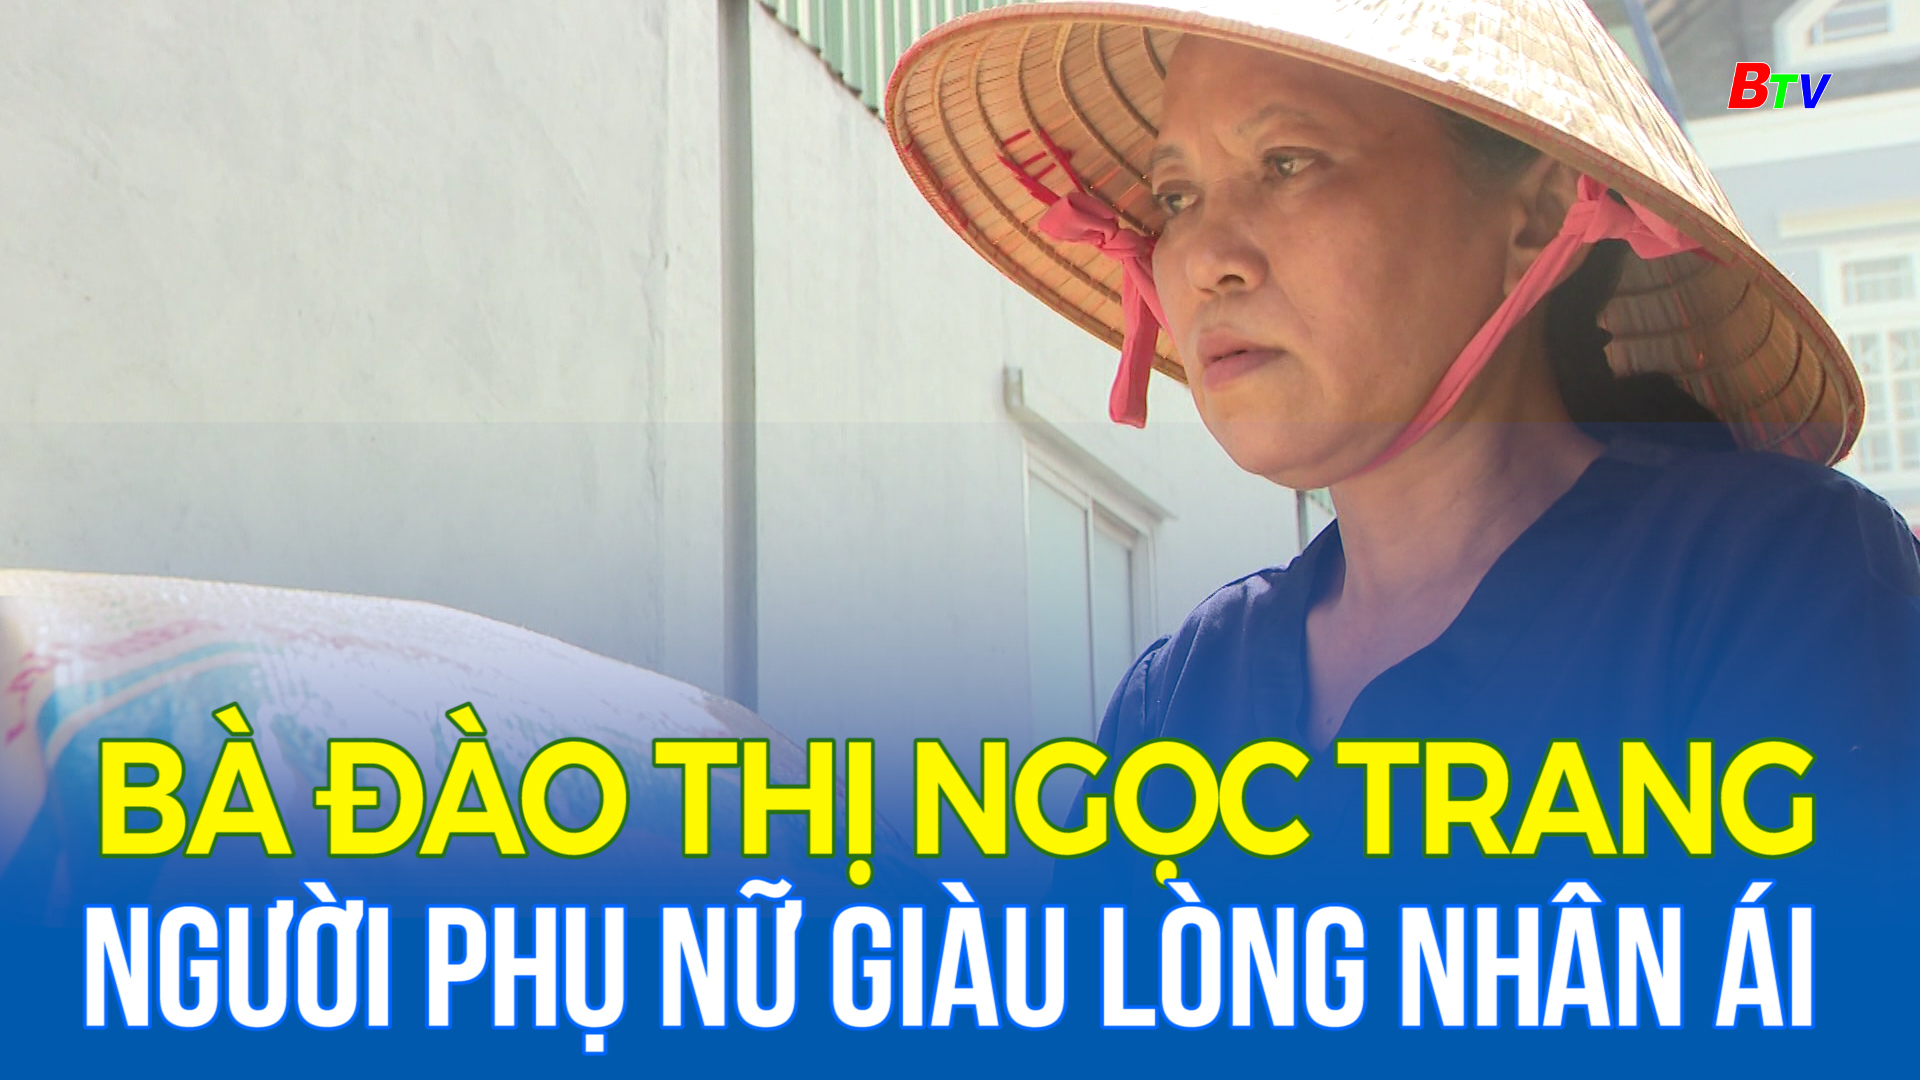 Bà Đào Thị Ngọc Trang – Người phụ nữ giàu lòng nhân ái  ở Thuận An, Bình Dương